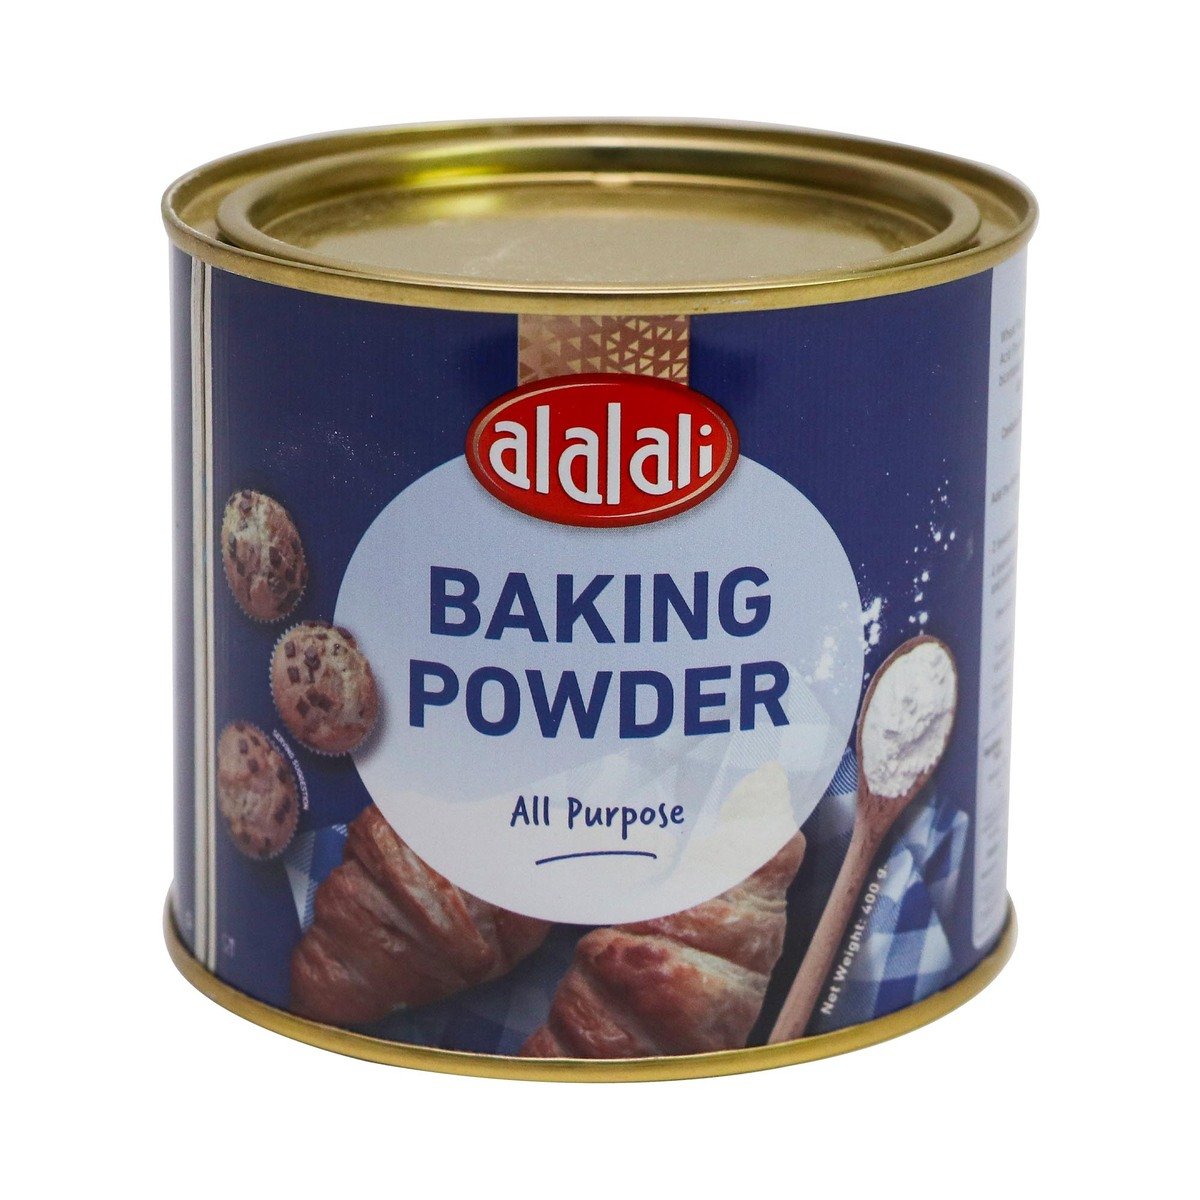 اشتري قم بشراء العلالي مسحوق الخبز 400 جم Online at Best Price من الموقع - من لولو هايبر ماركت Baking Powder في السعودية